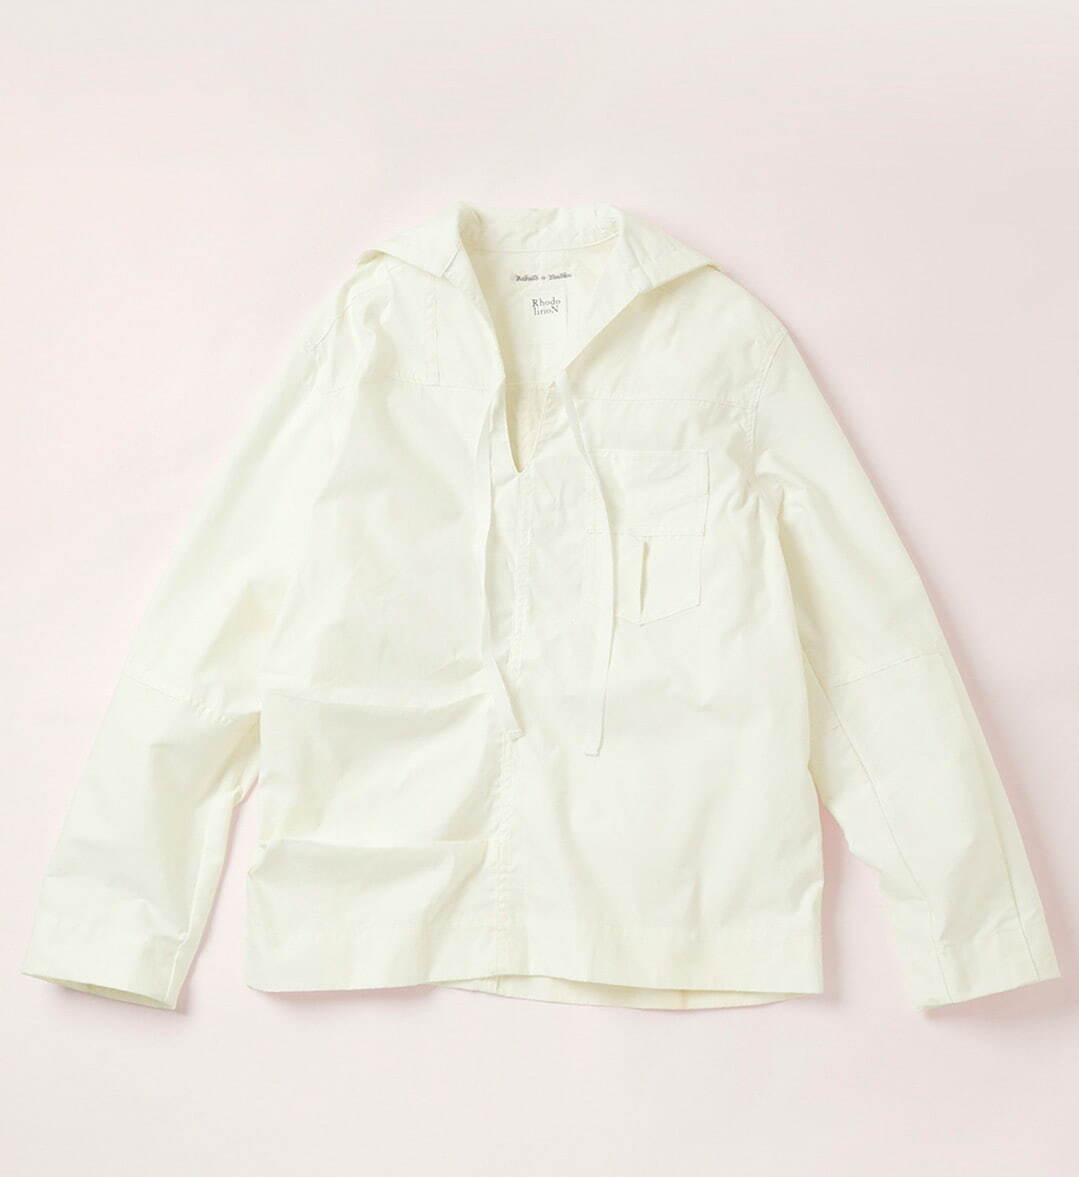 M-51 Over Pant -> Sailor Shirt 39,600円